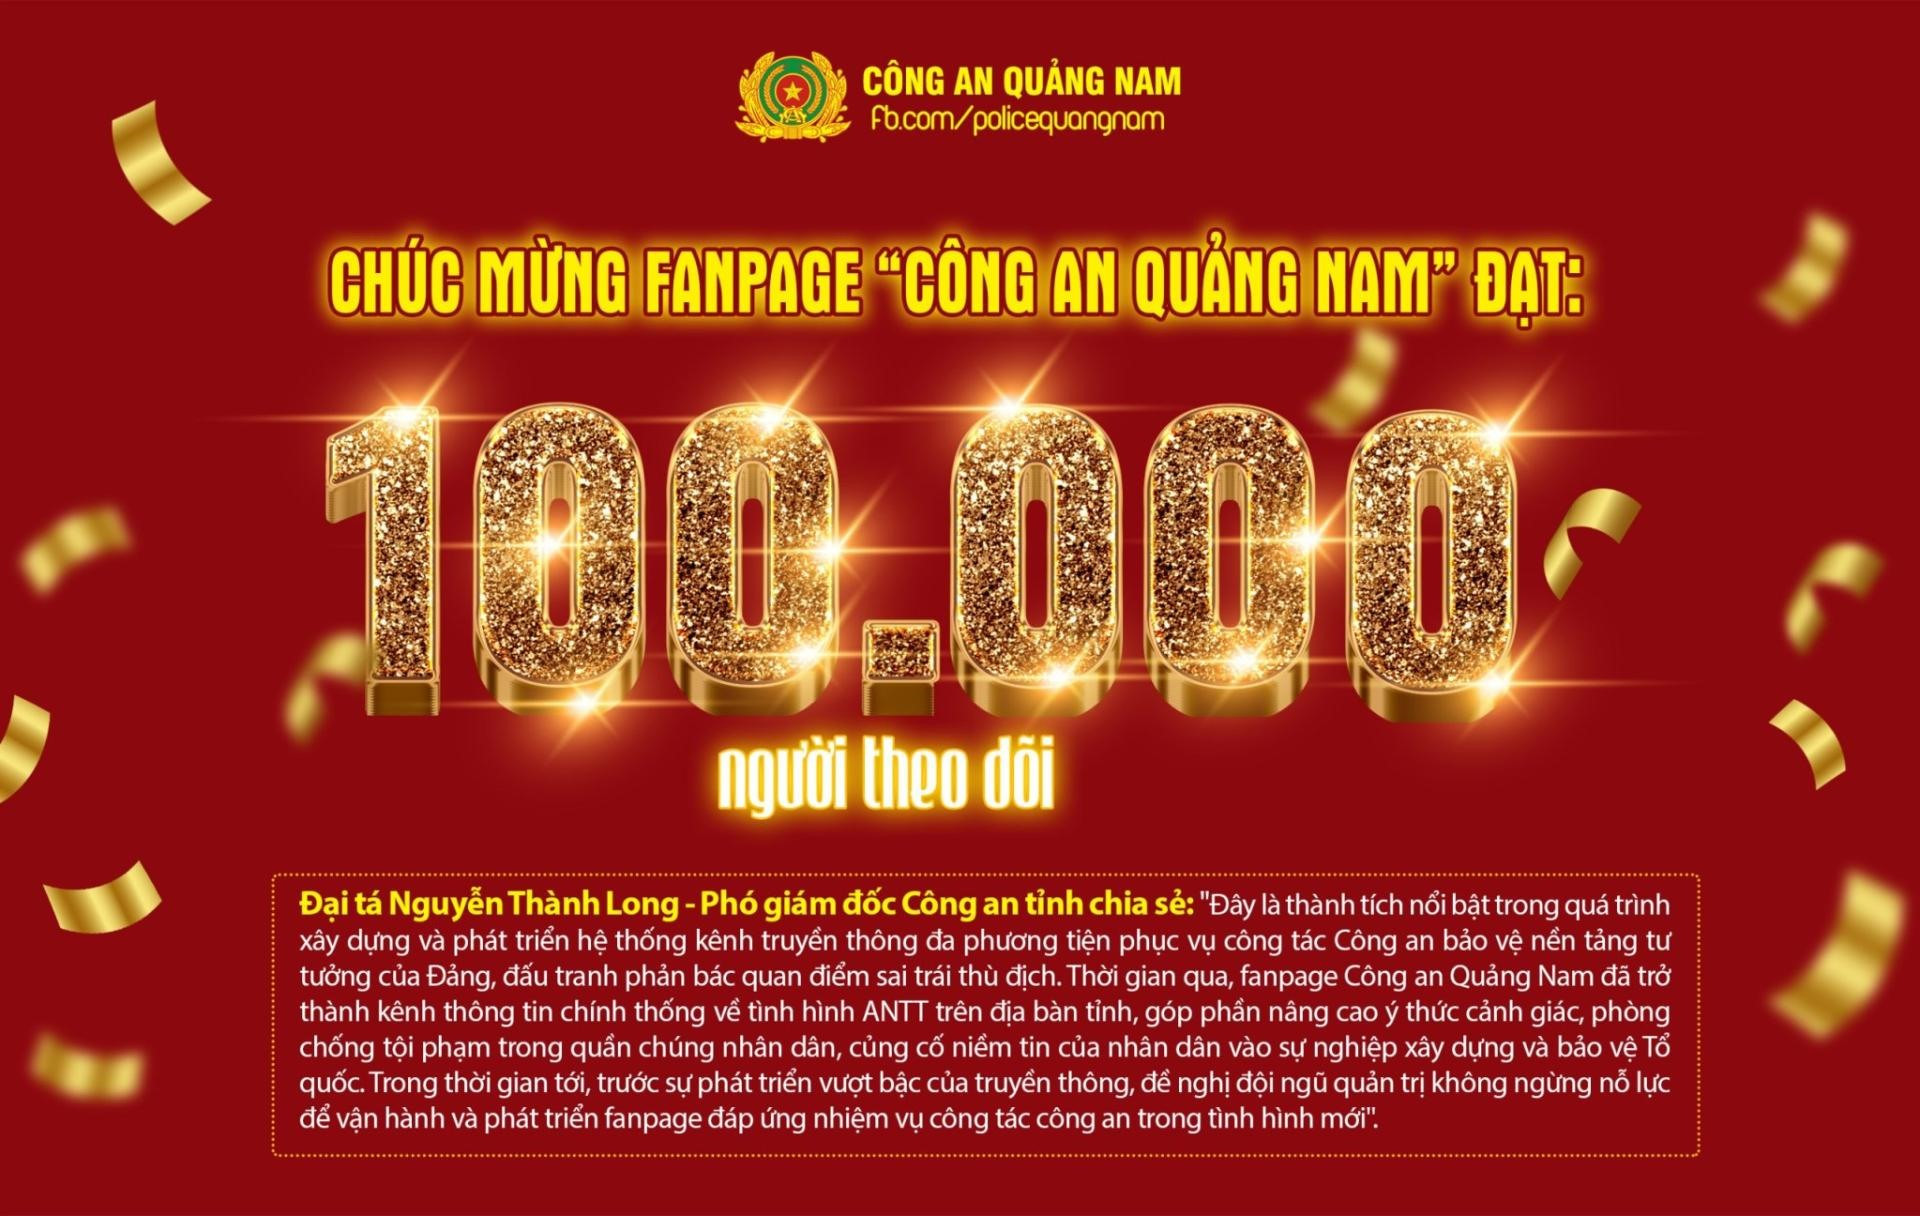 Fanpage “Công an Quảng Nam” đã đạt mốc 100 nghìn lượt theo dõi trên mạng xã hội Facebook.